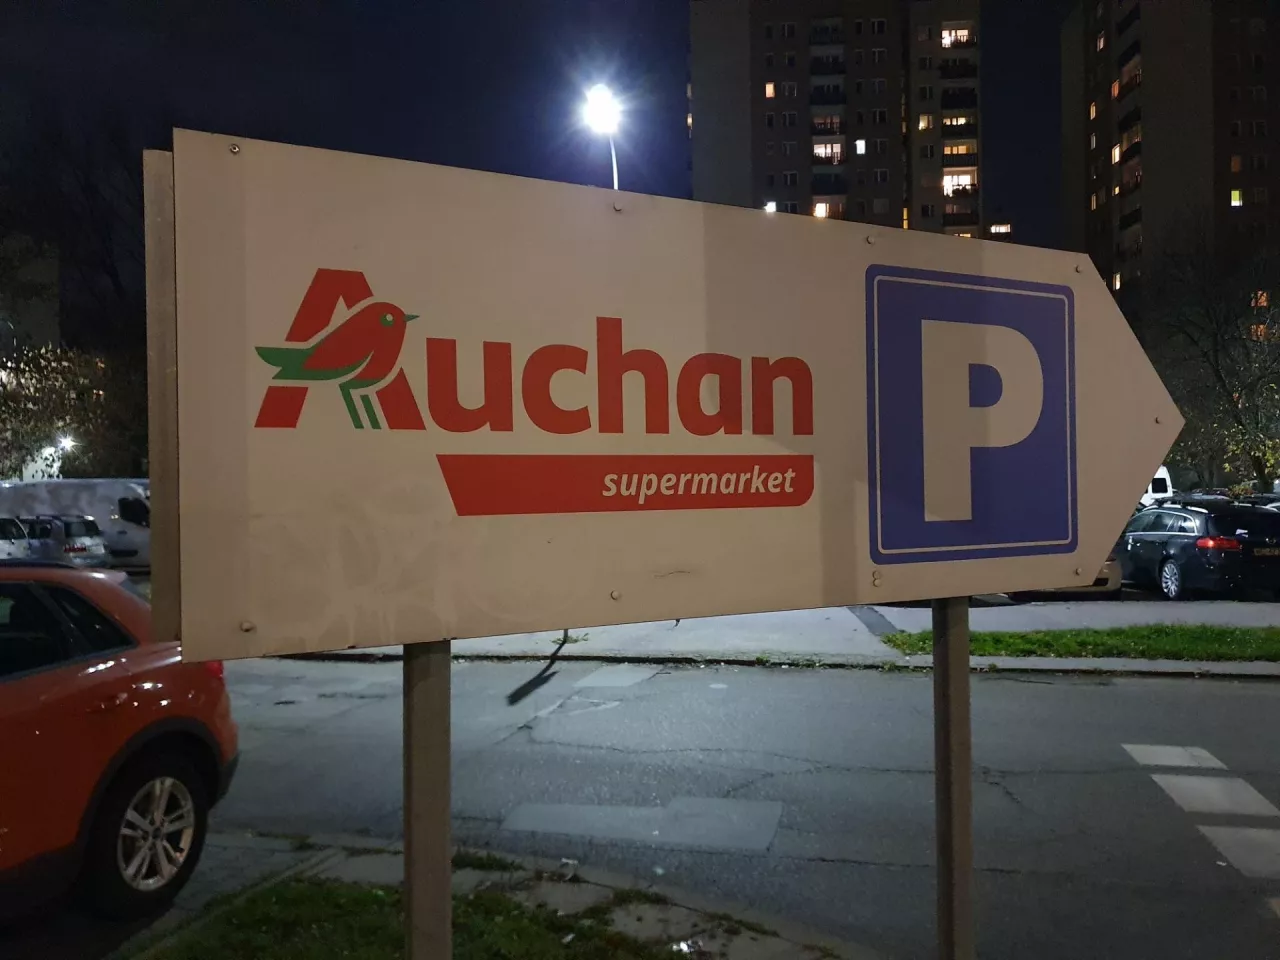 Auchan poszukuje menedżera, który będzie odpowiedzialny za rozwój sprzedaży w modelu quick commerce (fot. wiadomoscihandlowe.pl)